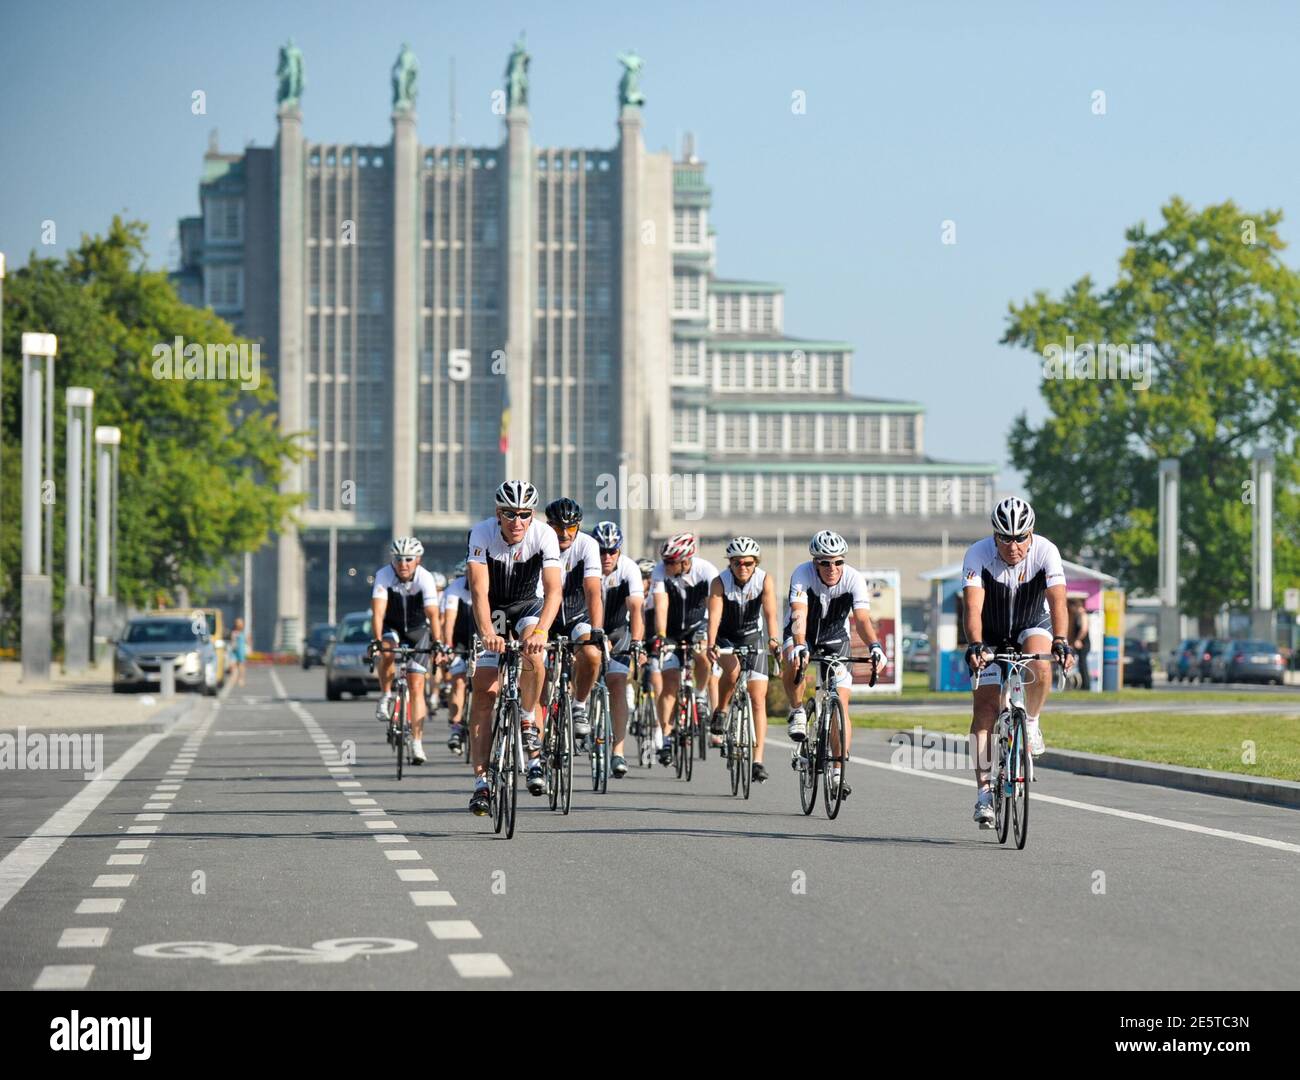 Cinq fois vainqueur belge du Tour de France et Giro d'Italia, Eddy Merckx (R), et le cycle peloton passé l'Expo de Bruxelles en route vers Londres pour la cérémonie d'ouverture des Jeux Olympiques, le 25 juillet 2012. Merckx dirige 24 cyclistes, dont d'anciennes personnalités sportives et célébrités belges, sur un trajet de trois jours vers Londres. REUTERS/Laurent Dubrule (BELGIQUE - Tags: SPORT JEUX OLYMPIQUES CYCLISME) Banque D'Images